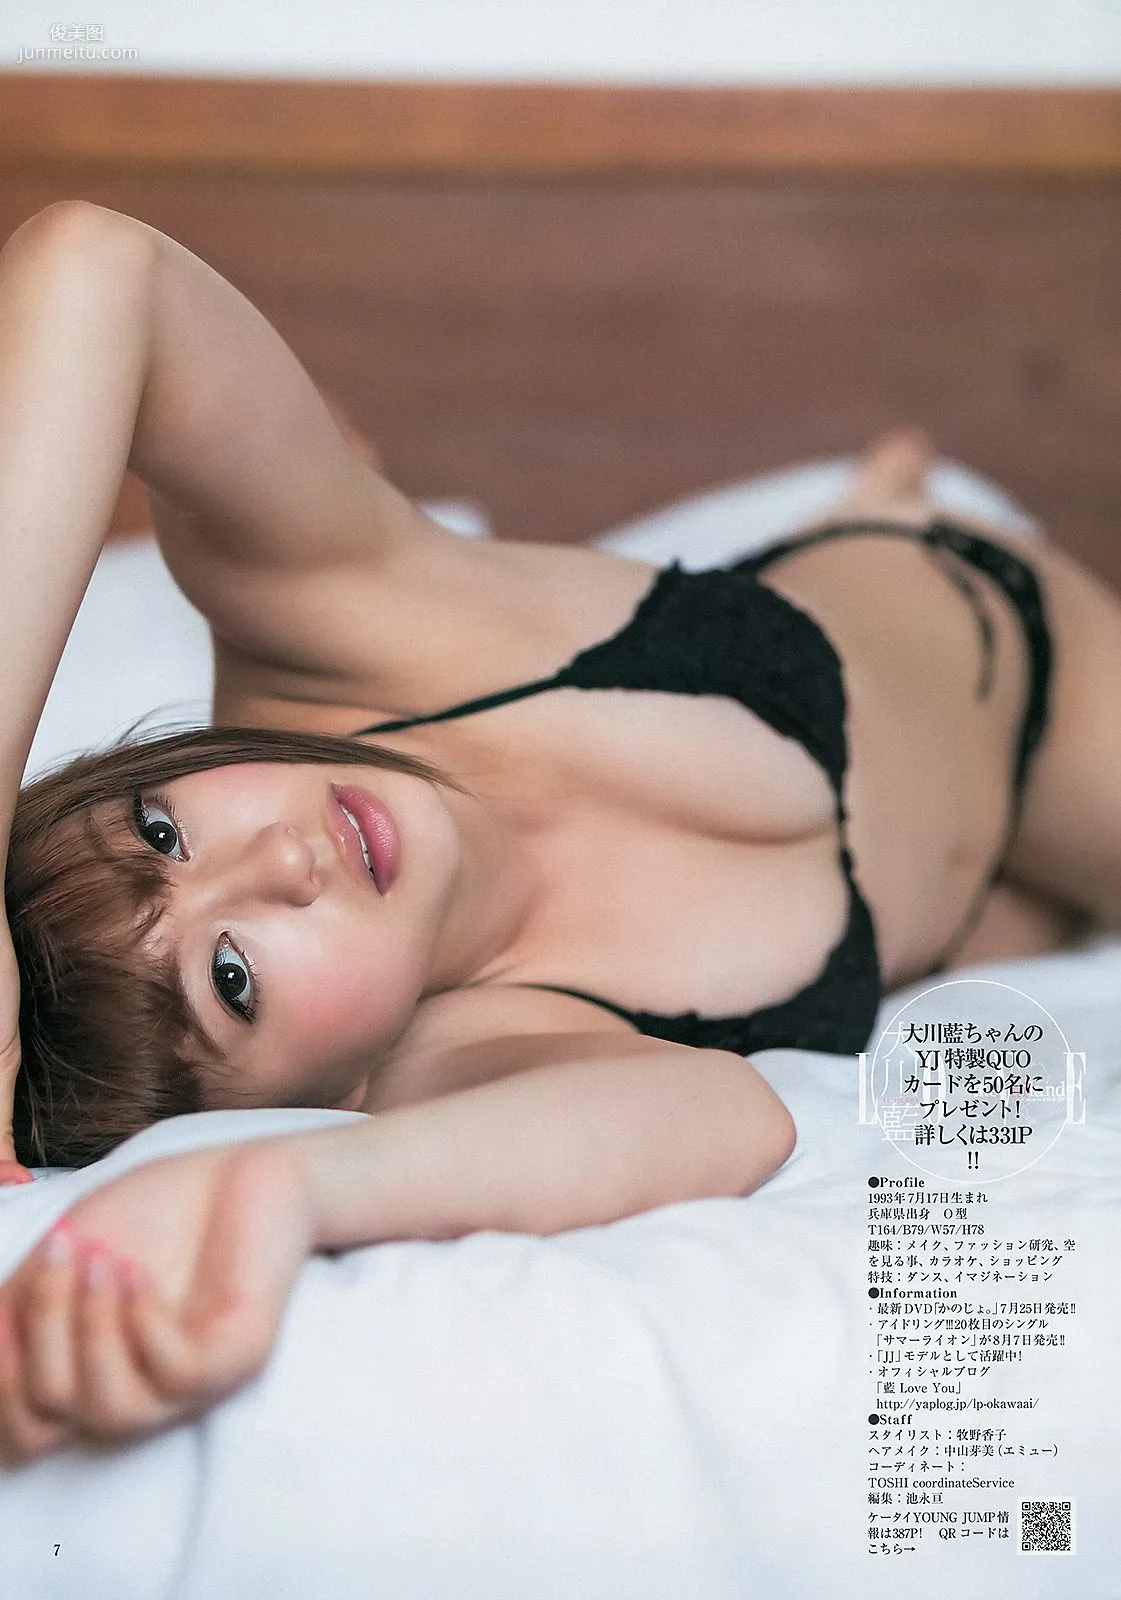 大川藍 夏菜 おはガールちゅ!ちゅ!ちゅ! [Weekly Young Jump] 2013年No.31 写真杂志8